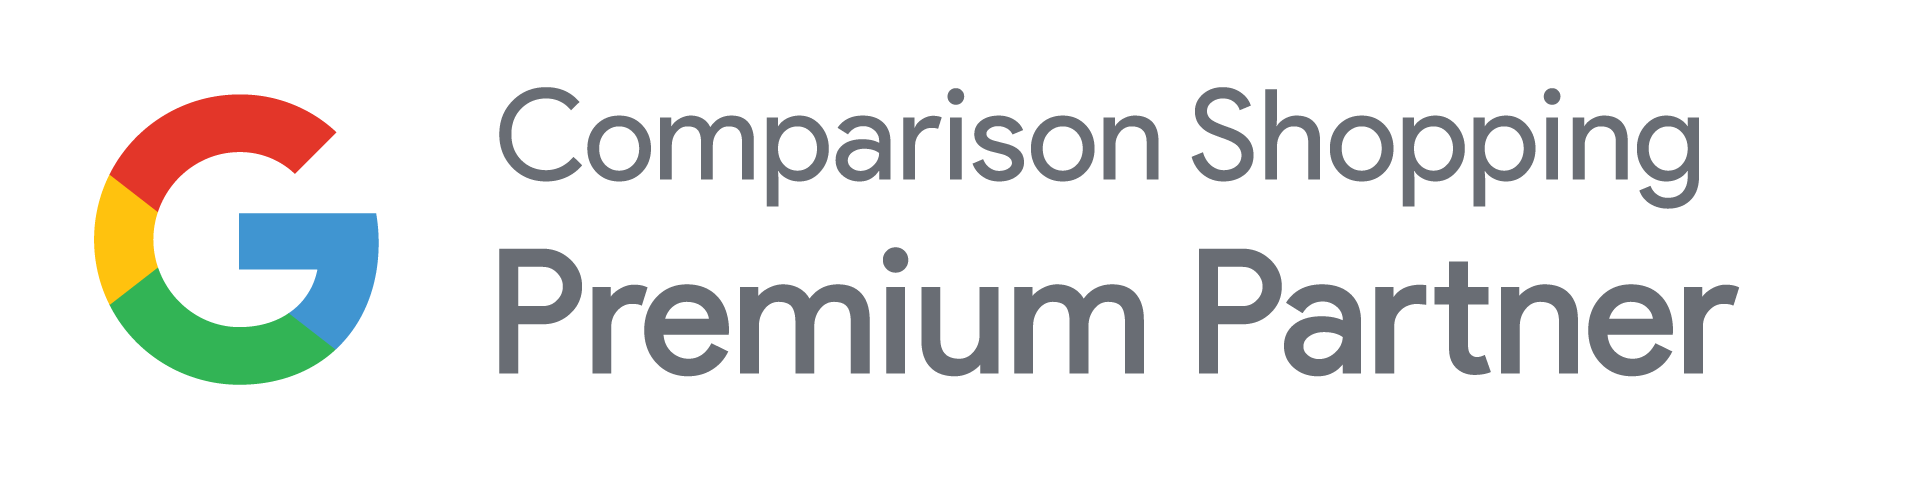 CSS Premium Partner